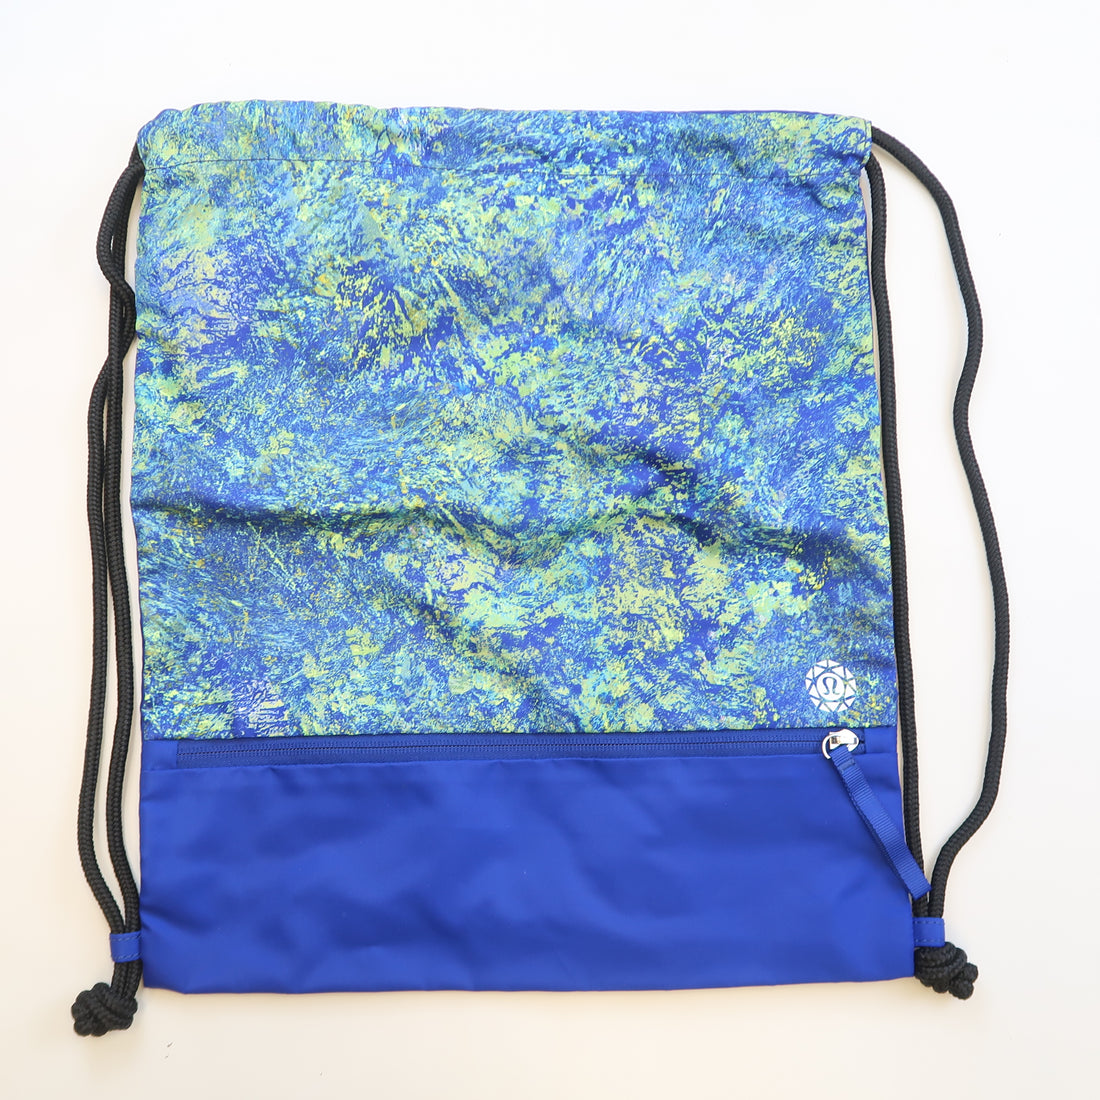 Lululemon - Seawheeze Drawstring Backpack